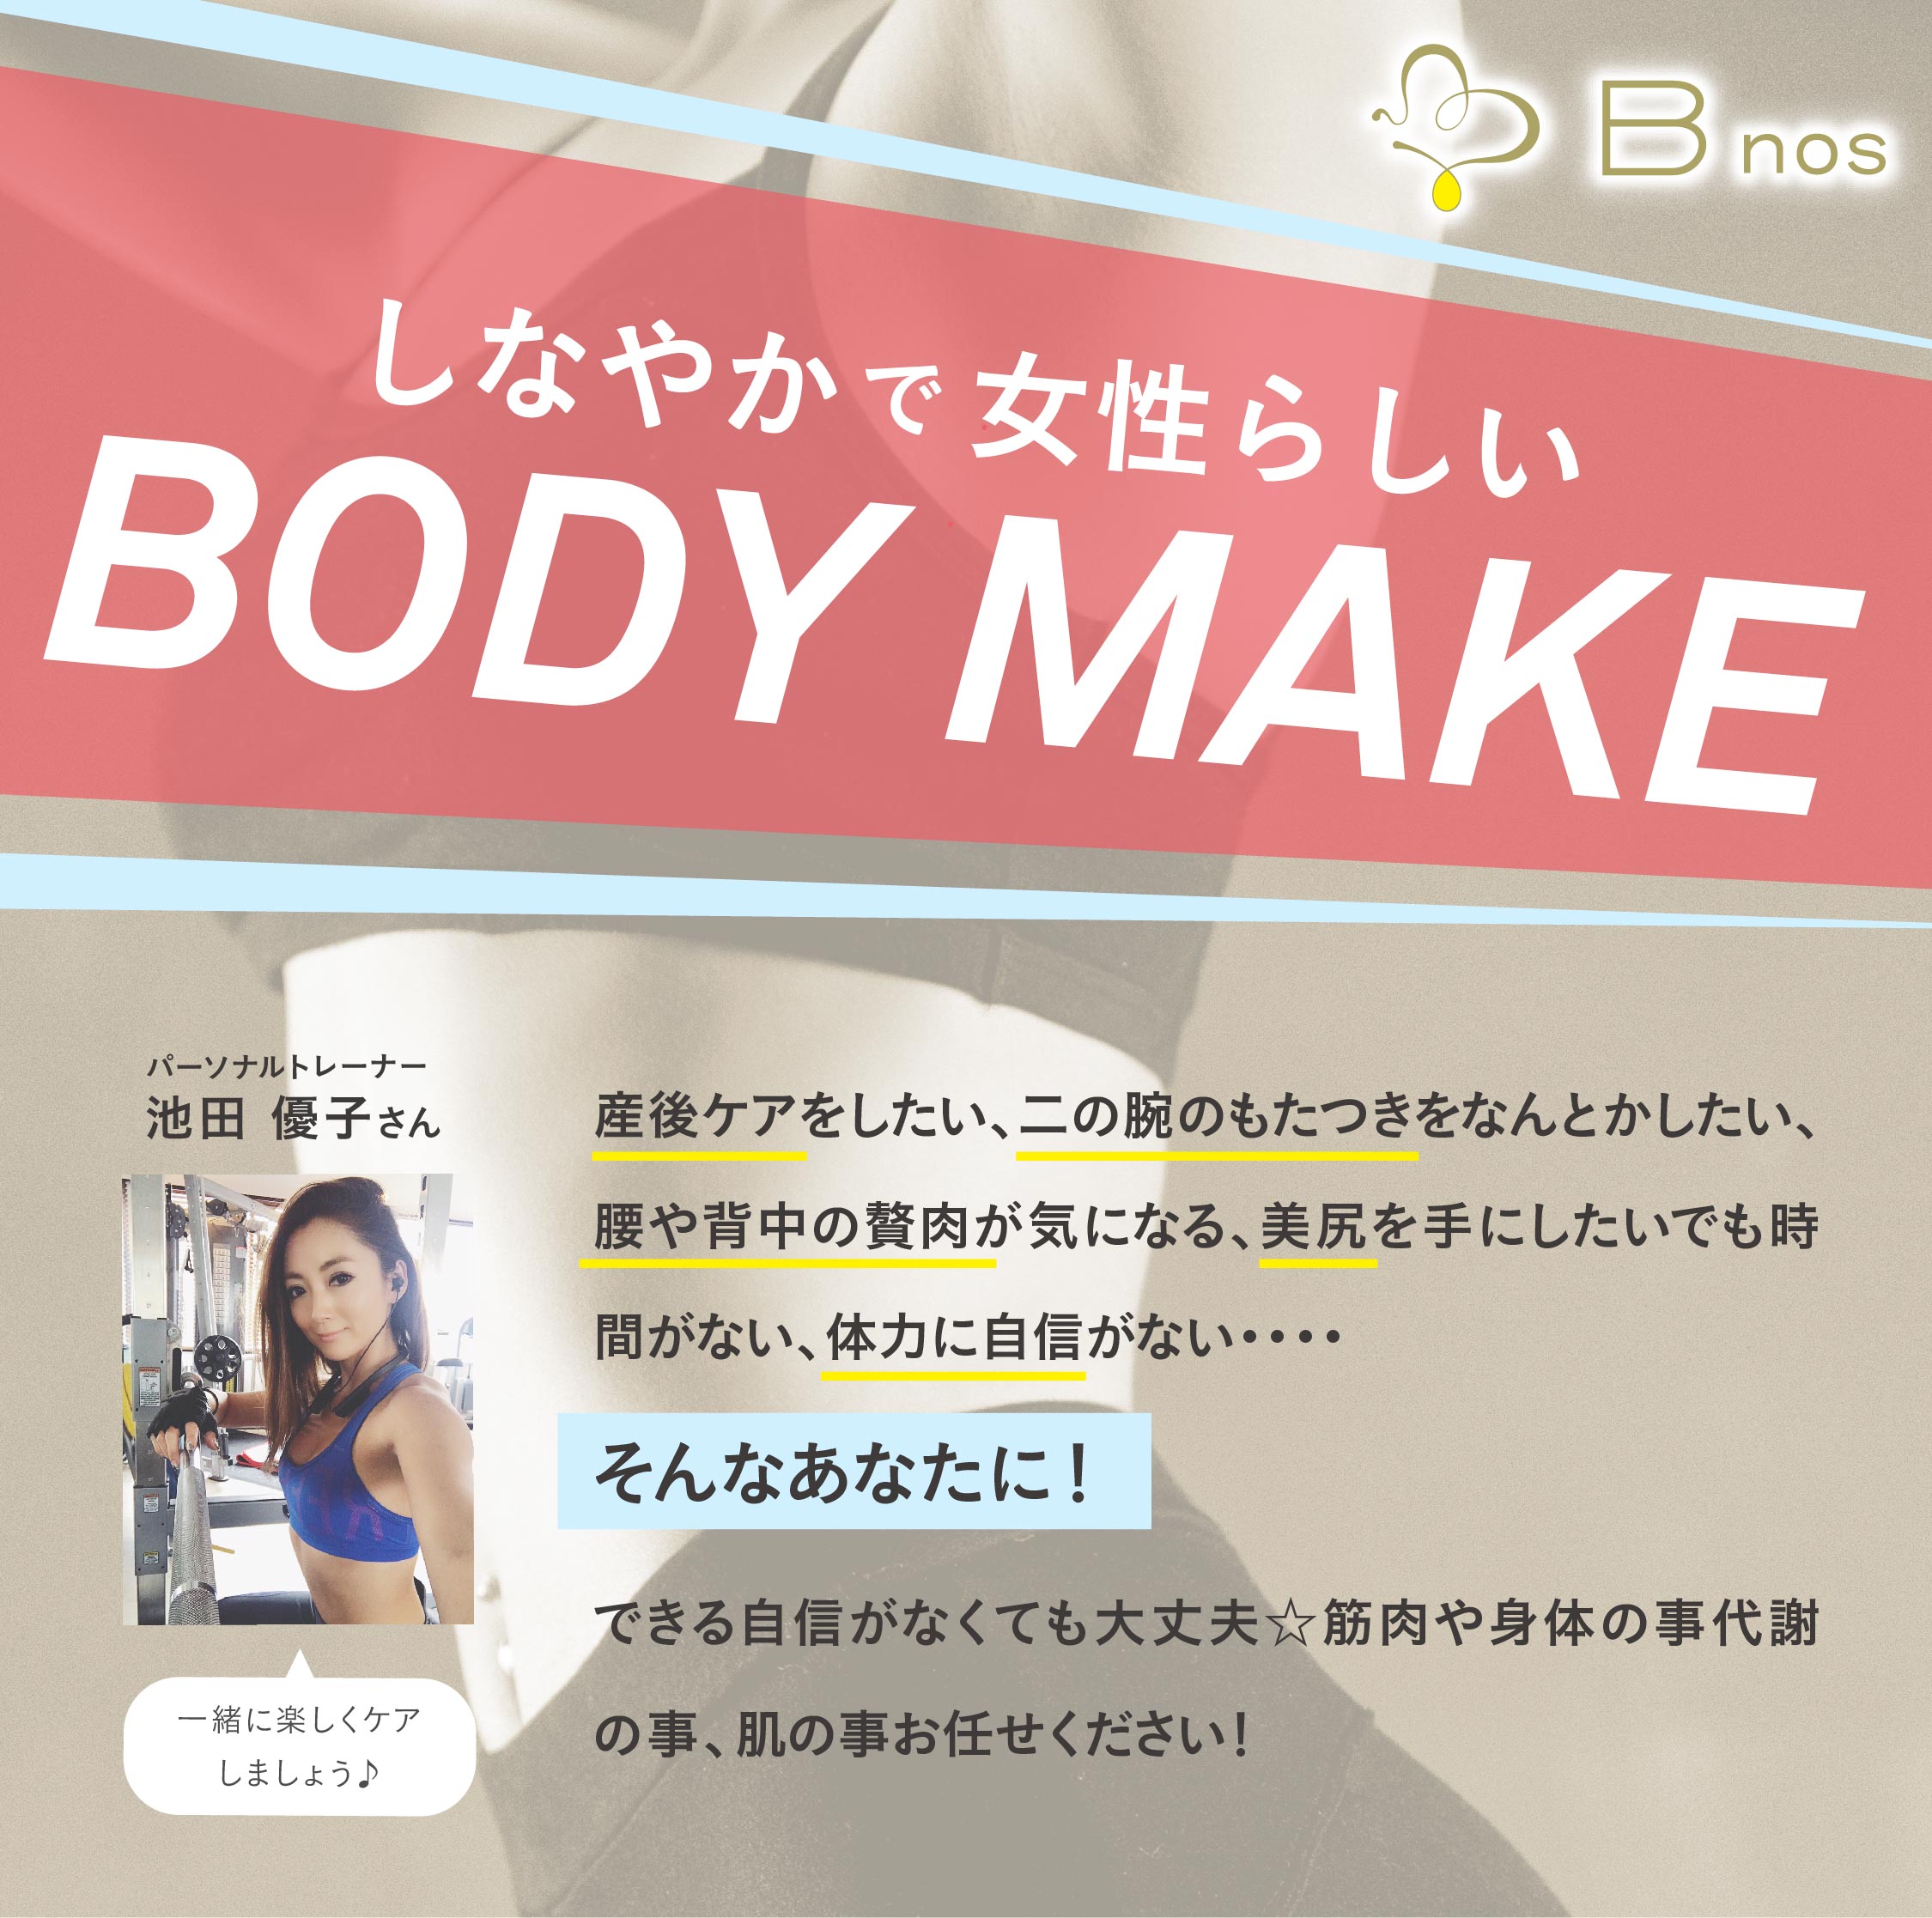 1月 Body Make パーソナルトレーニングのお知らせ Bnos ビノス